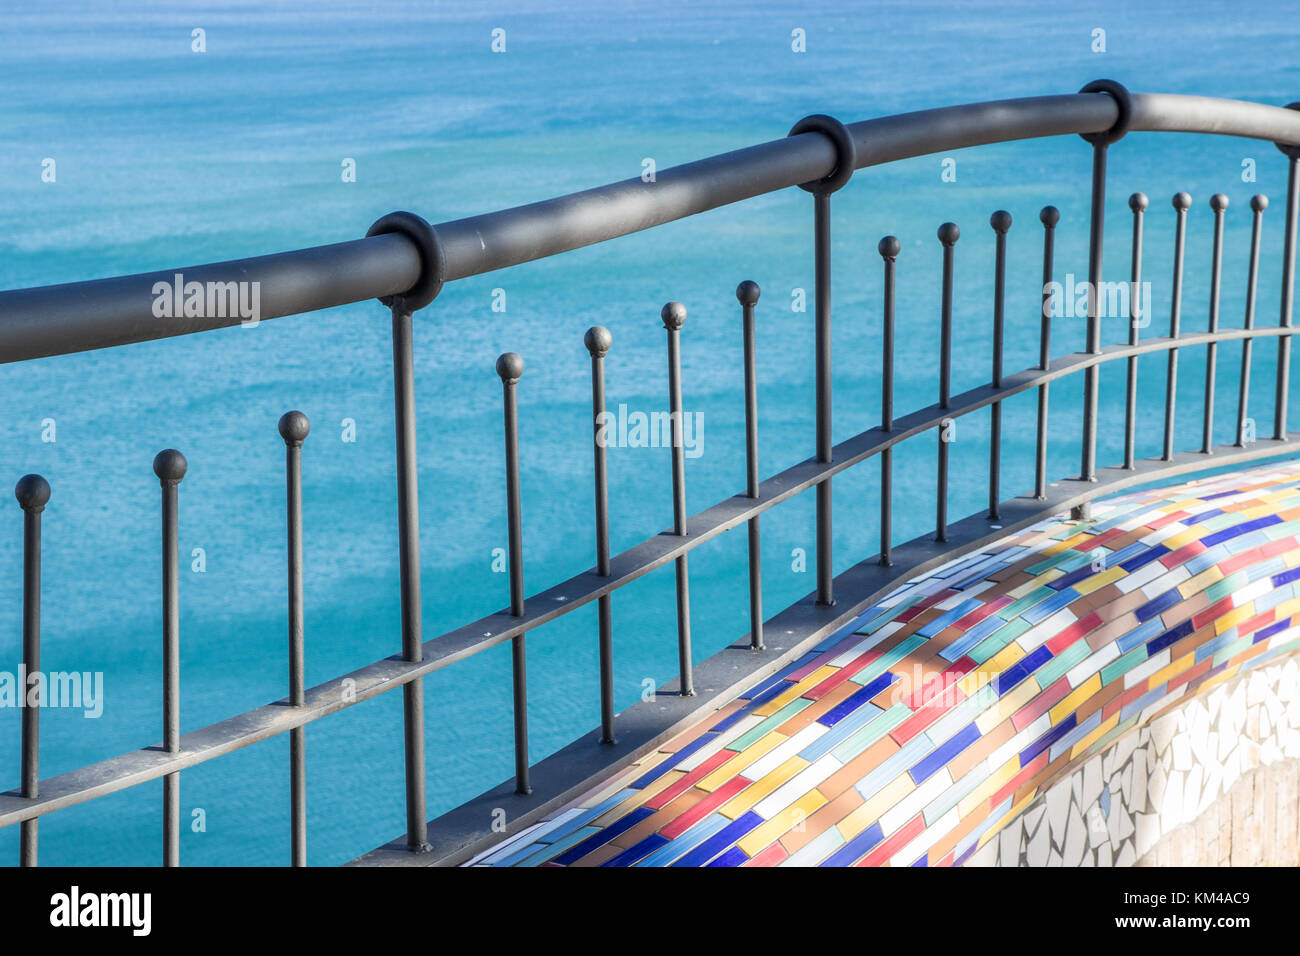 Villa Comunale, Vietri sul mare (Côte d'Amalfi, Italie) : mur de céramique colorée et porte de fer, mer bleue en arrière-plan Banque D'Images